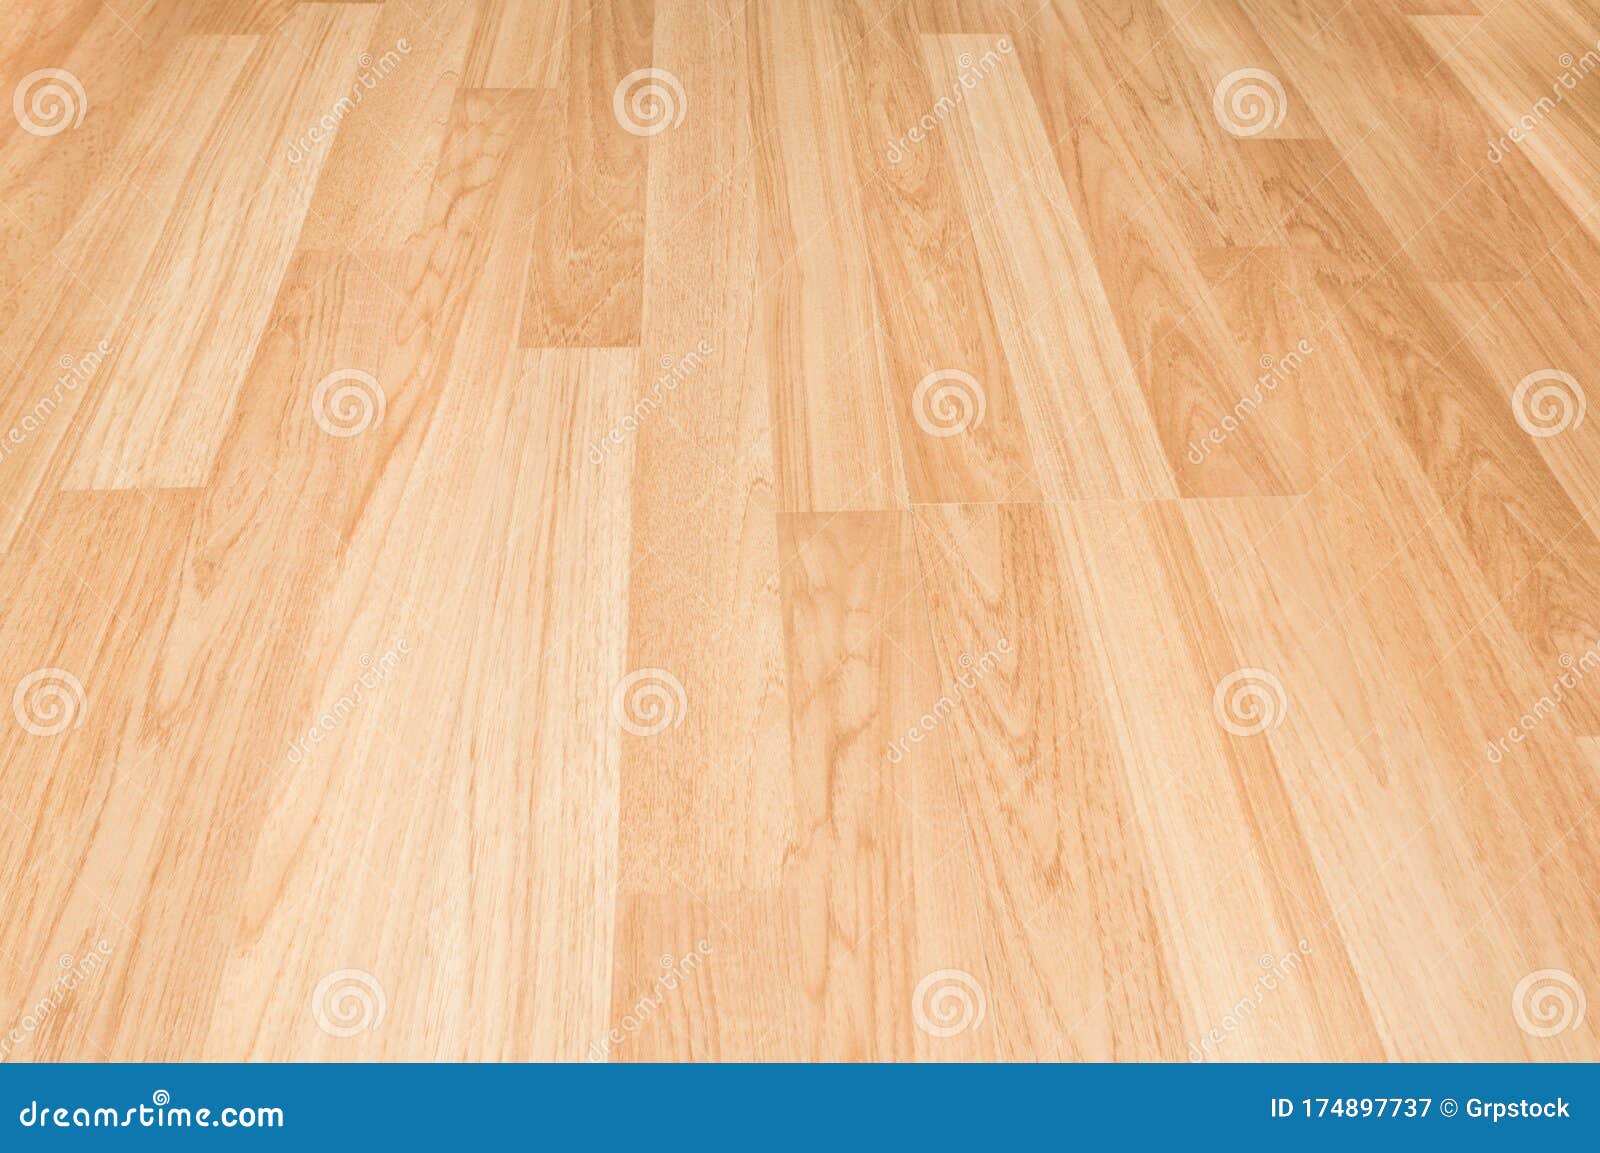 Sàn gỗ sồi là một loại sàn gỗ cao cấp và được yêu thích bởi tính năng bền bỉ và chống trầy xước. Đây là một trong những lựa chọn hàng đầu cho các căn nhà hiện đại và sang trọng. Nếu bạn đang tìm kiếm một lựa chọn lý tưởng cho không gian của mình, hãy chiêm ngưỡng hình ảnh sàn gỗ sồi tuyệt đẹp này.